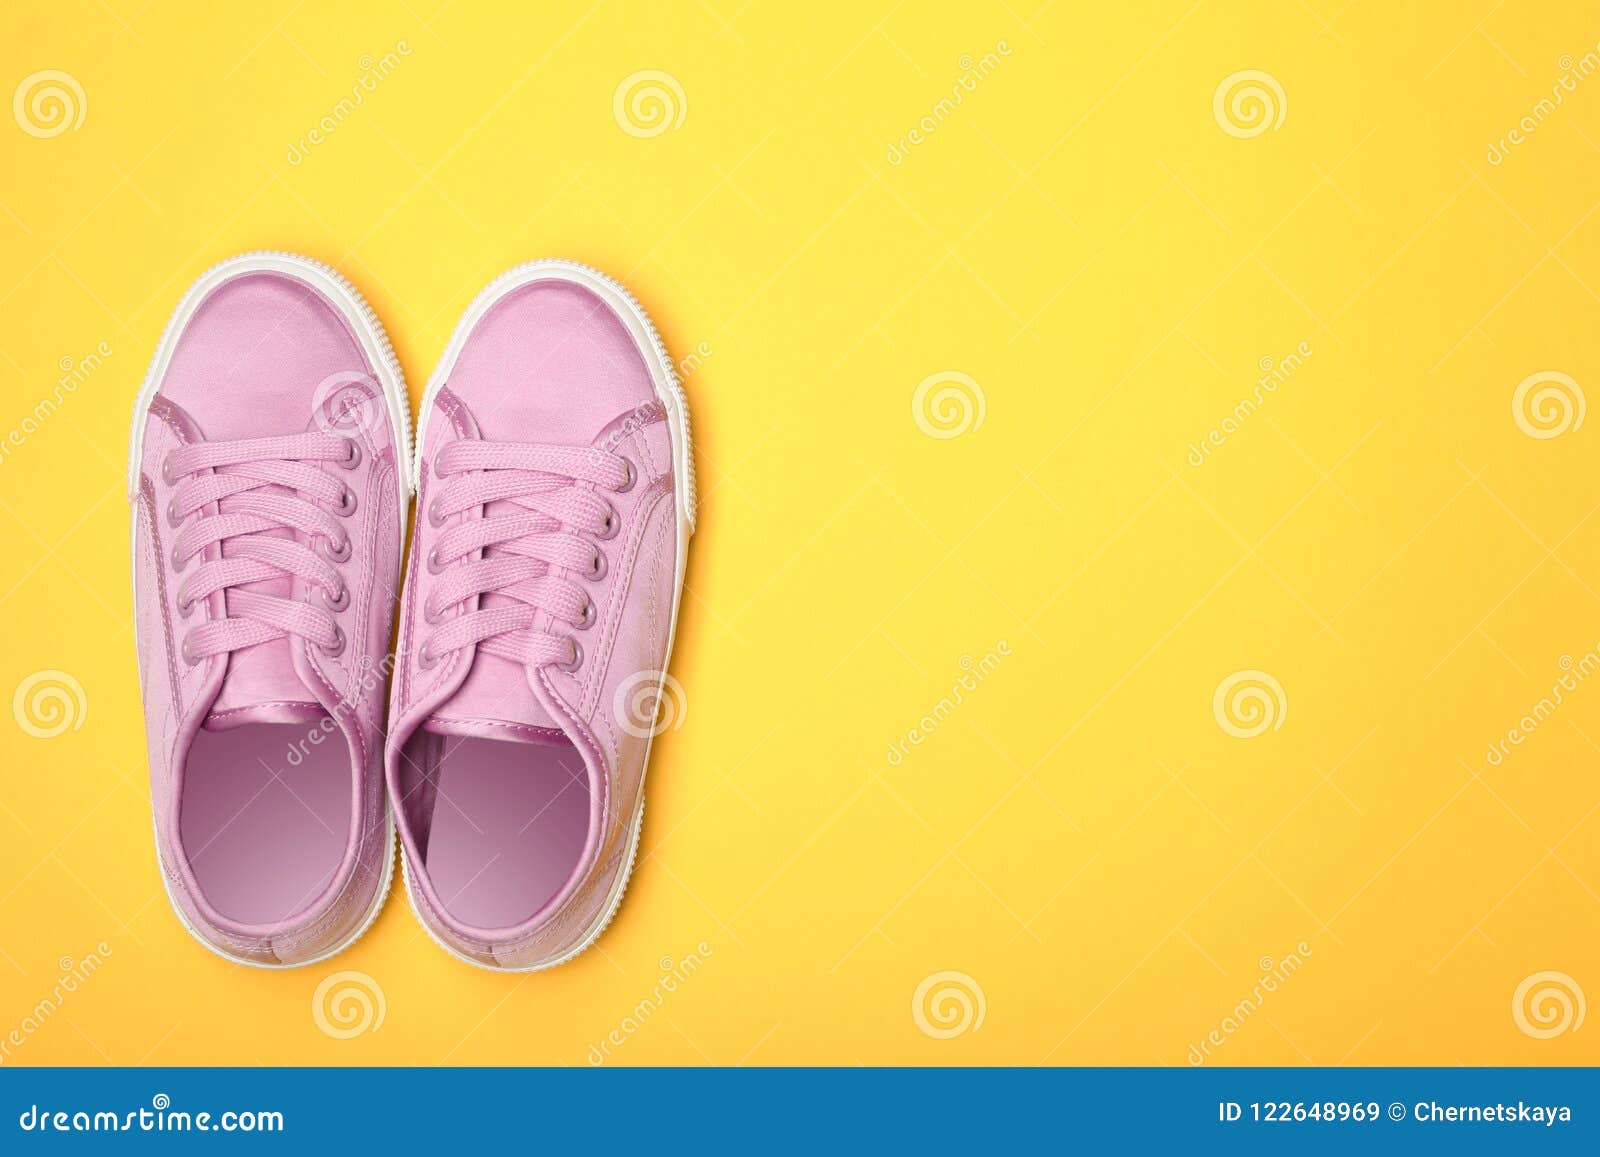 Stylish New Shoes on Color Background Stock Image - Image of elegance ...